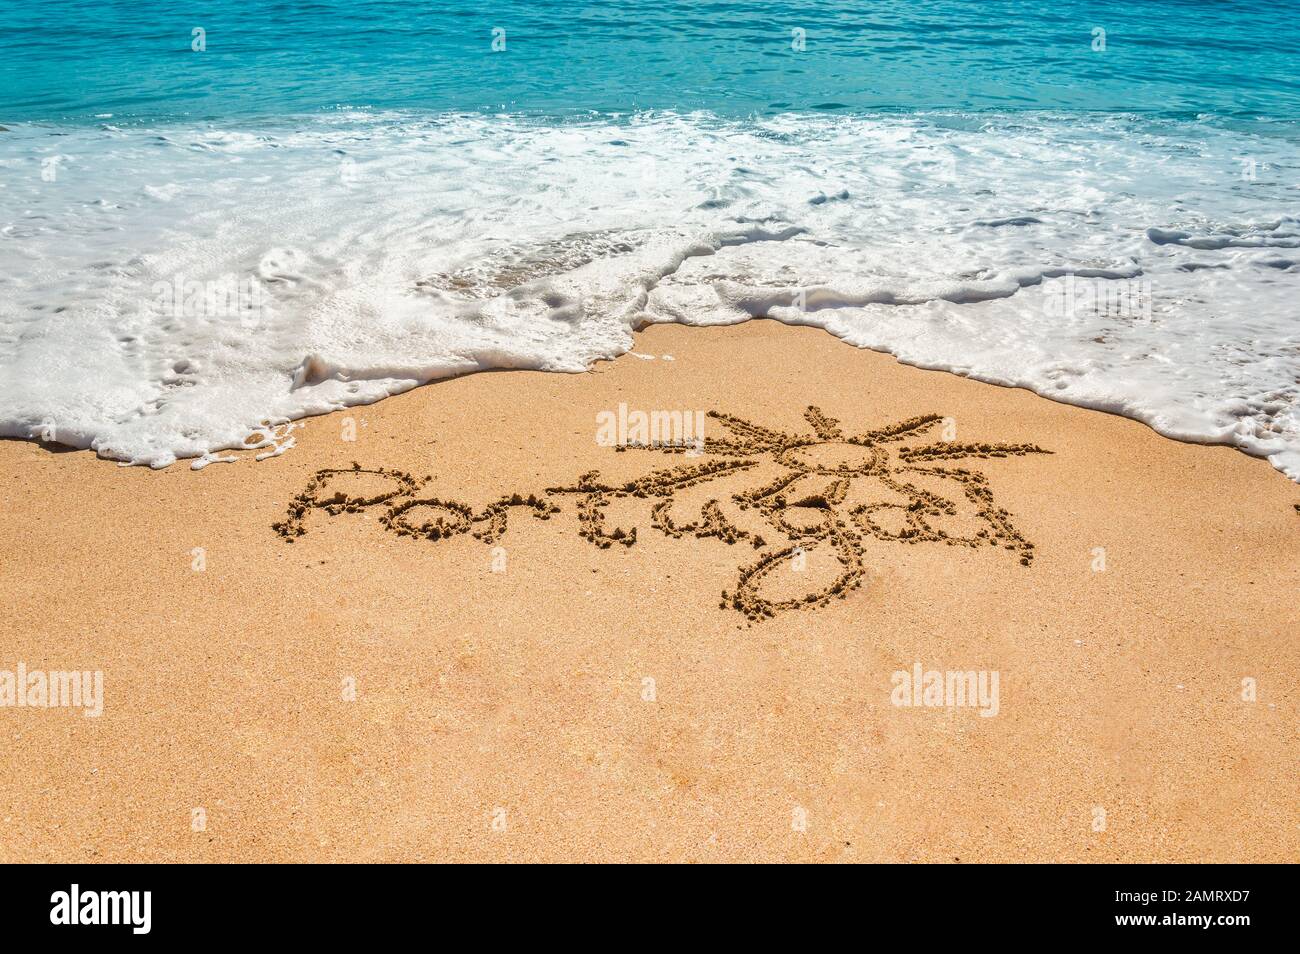 Texte écrit à la main Portugal et symbole du soleil sur la plage de sable doré avec des vagues à venir. Concept de vacances chaudes d'été et de vacances à la mer ou à l'océan Banque D'Images